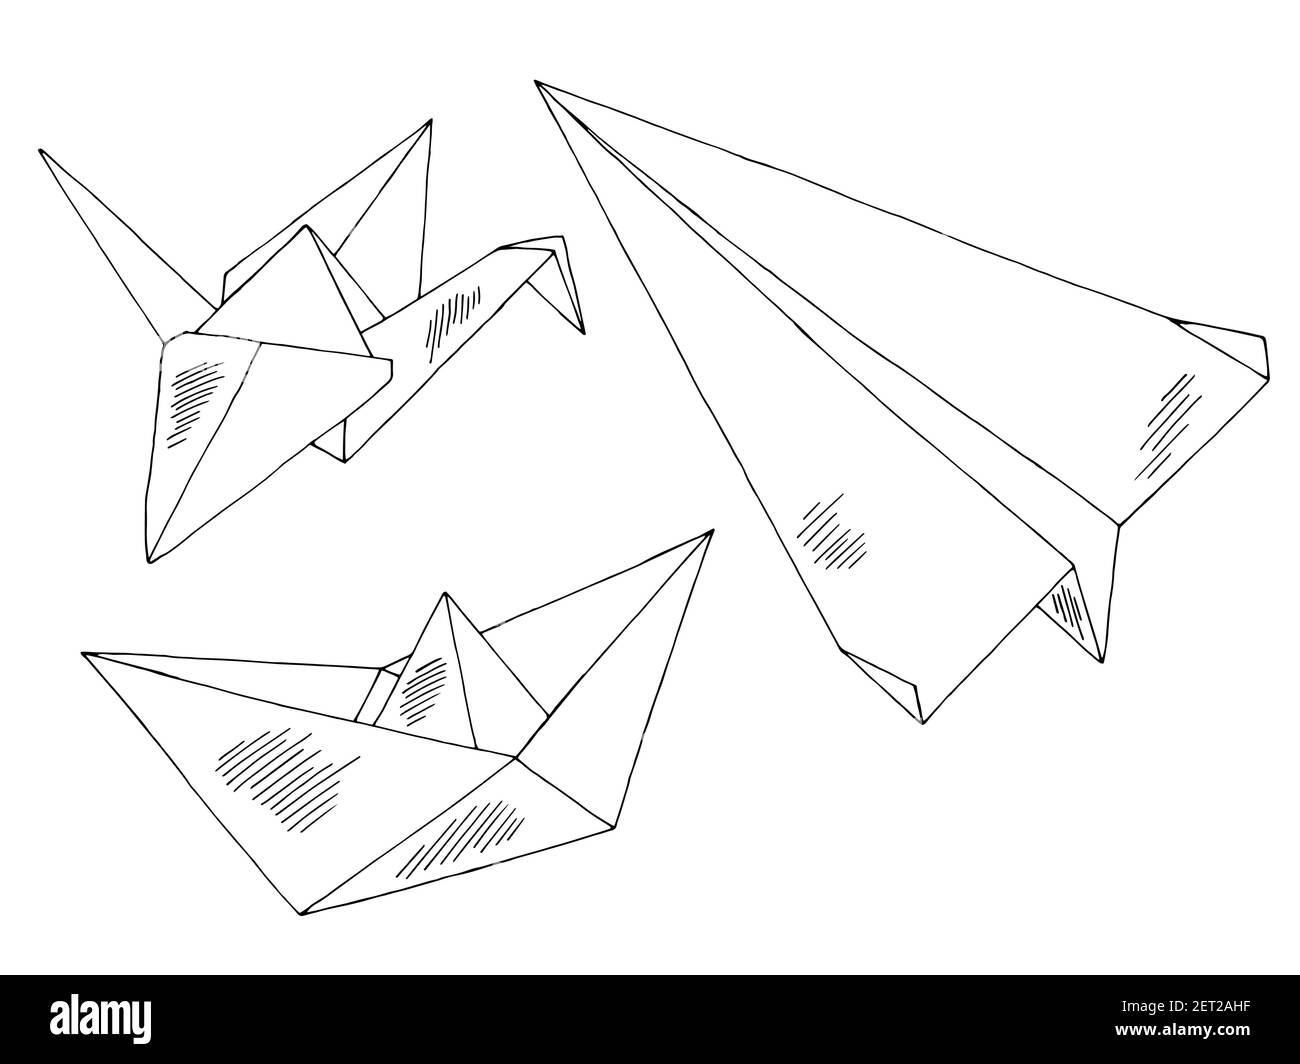 Origami Papier Schiff Flugzeug Kran Grafik schwarz weiß isoliert gesetzt Vektor der Skizzendarstellung Stock Vektor